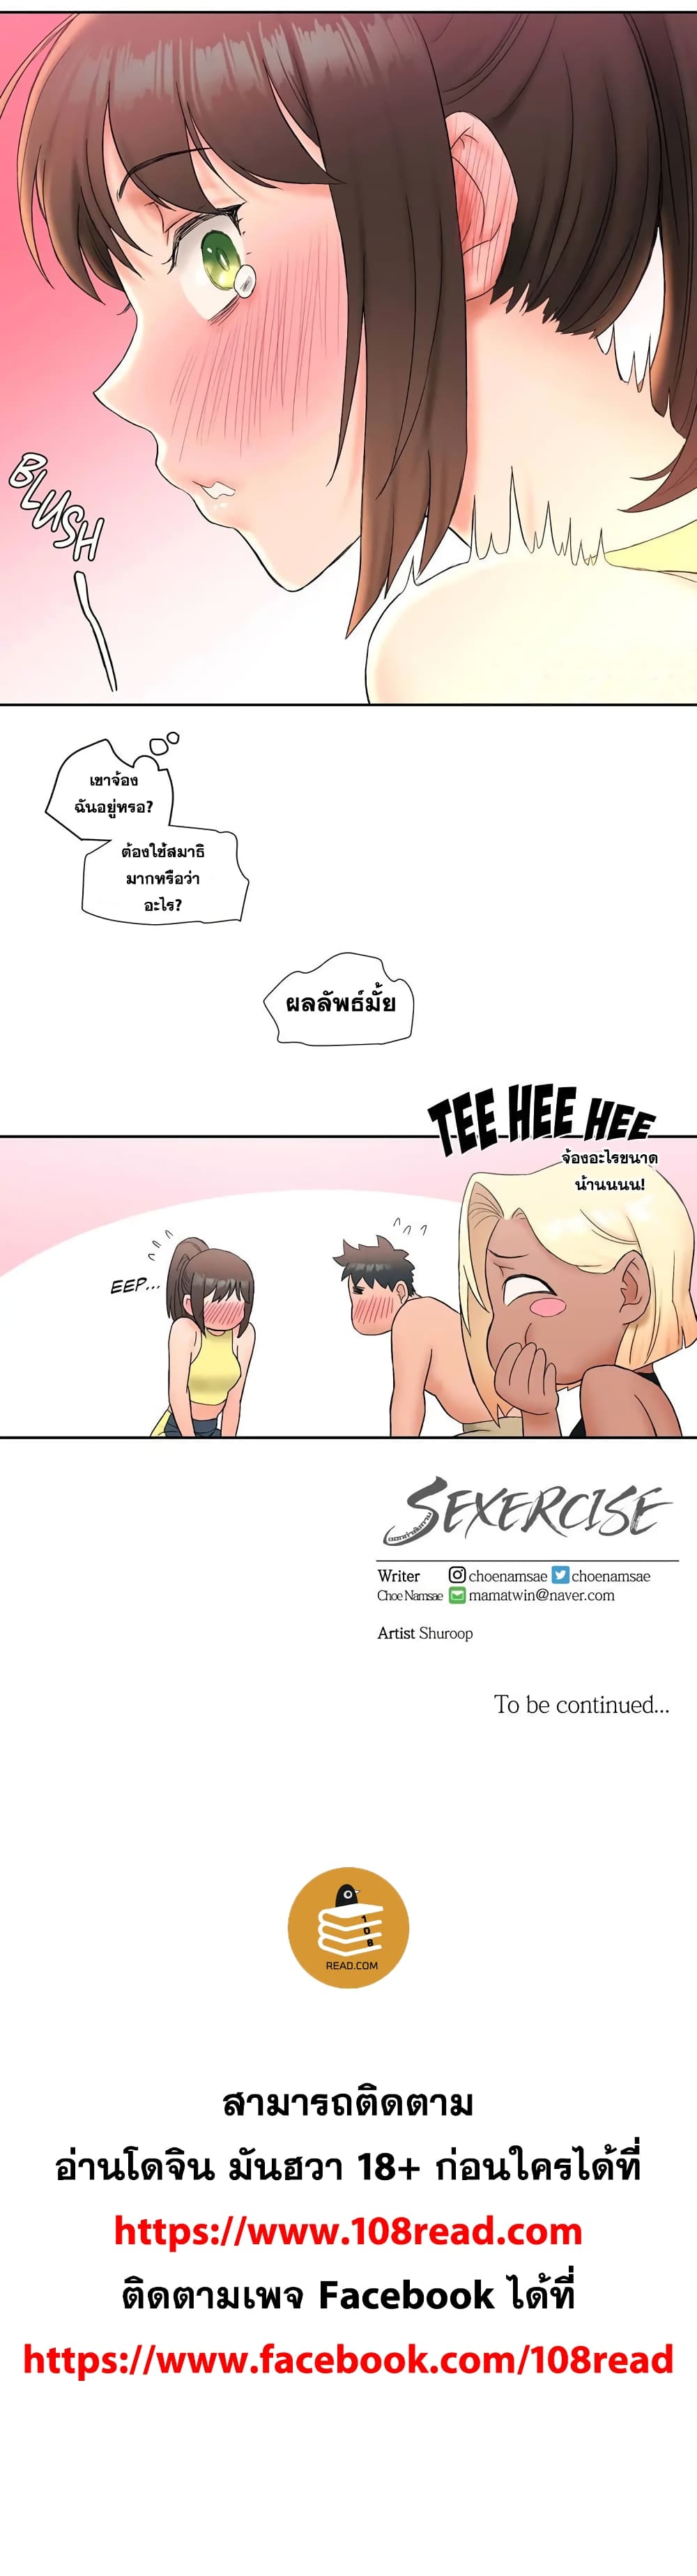 Sexercise ตอนที่ 12 แปลไทย รูปที่ 15